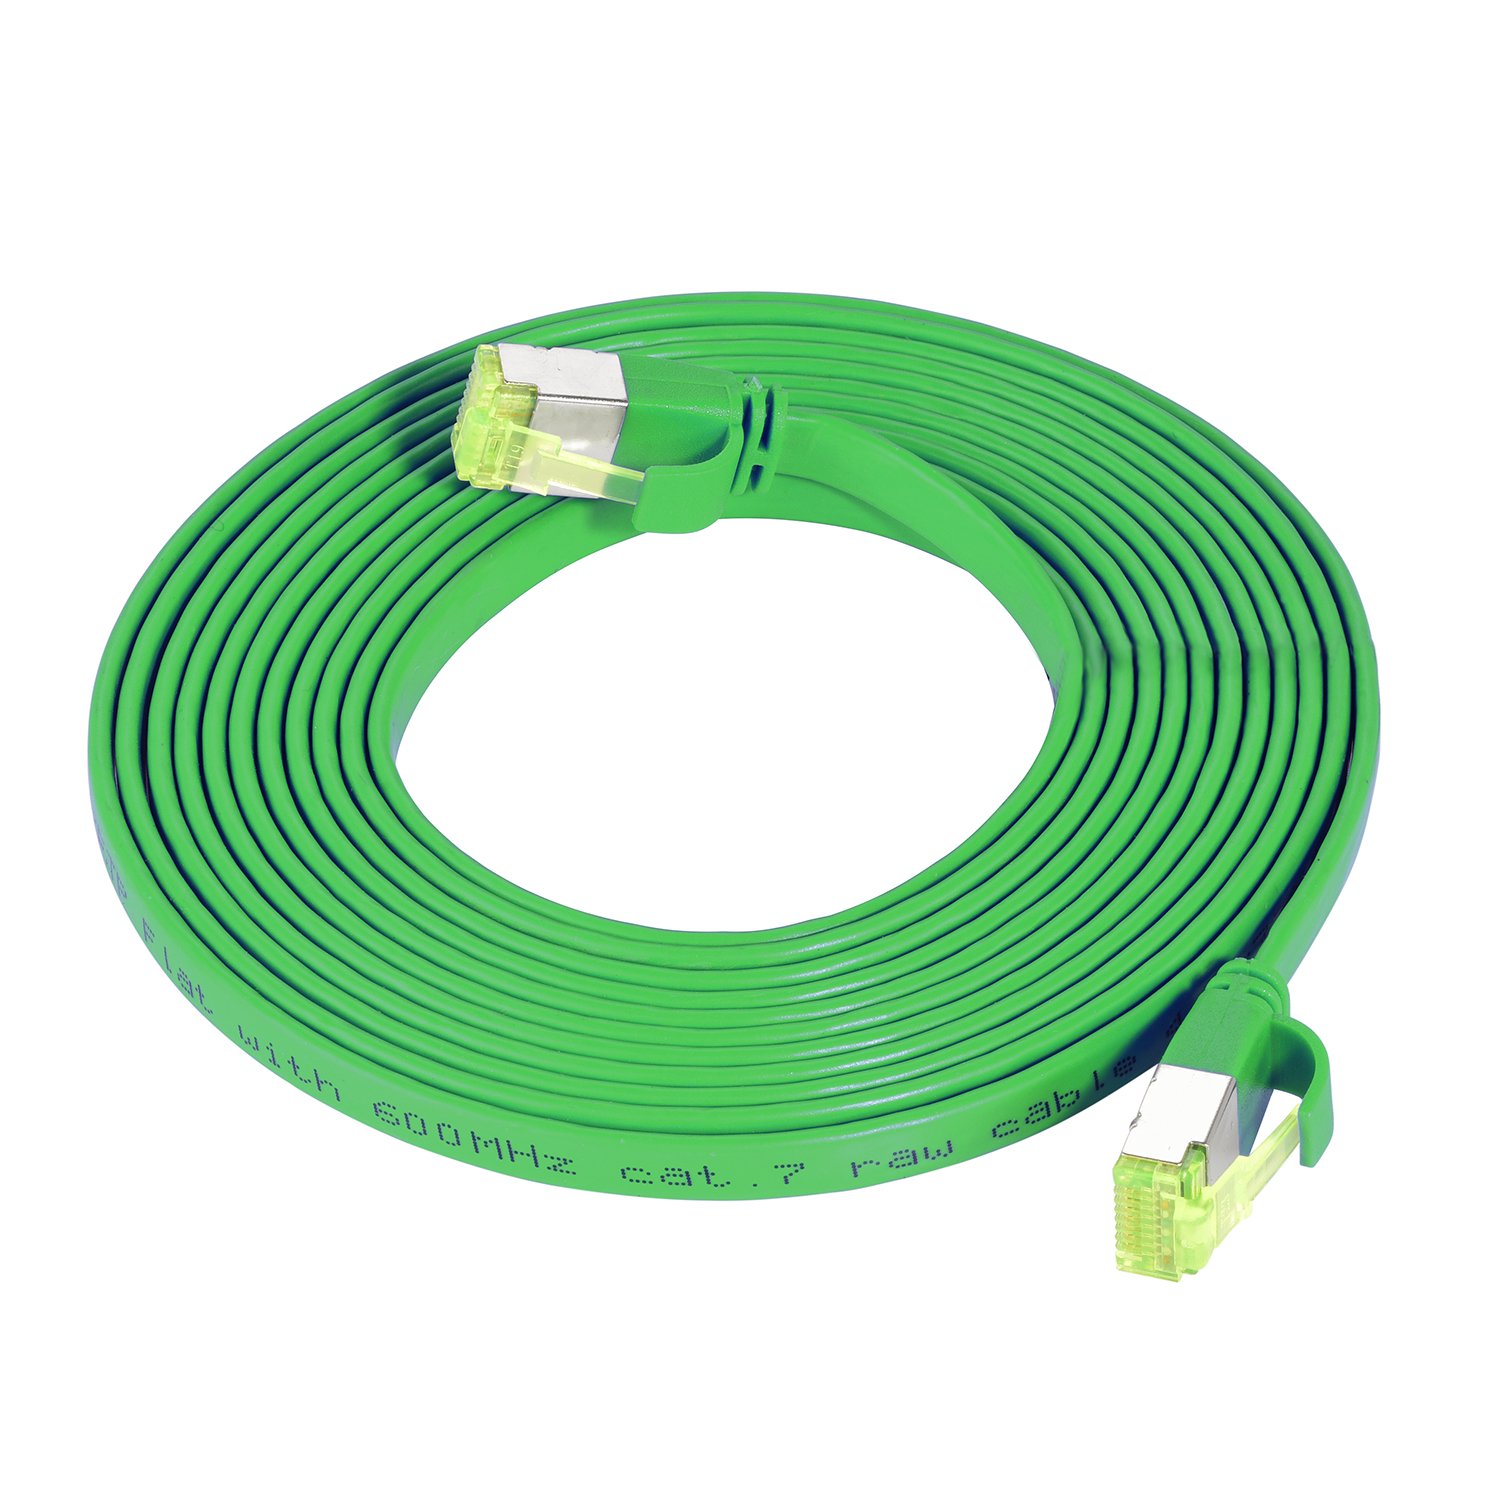 / U/FTP 10 m TPFNET grün, Netzwerkkabel, Flachkabel GBit, 10 Patchkabel 10m